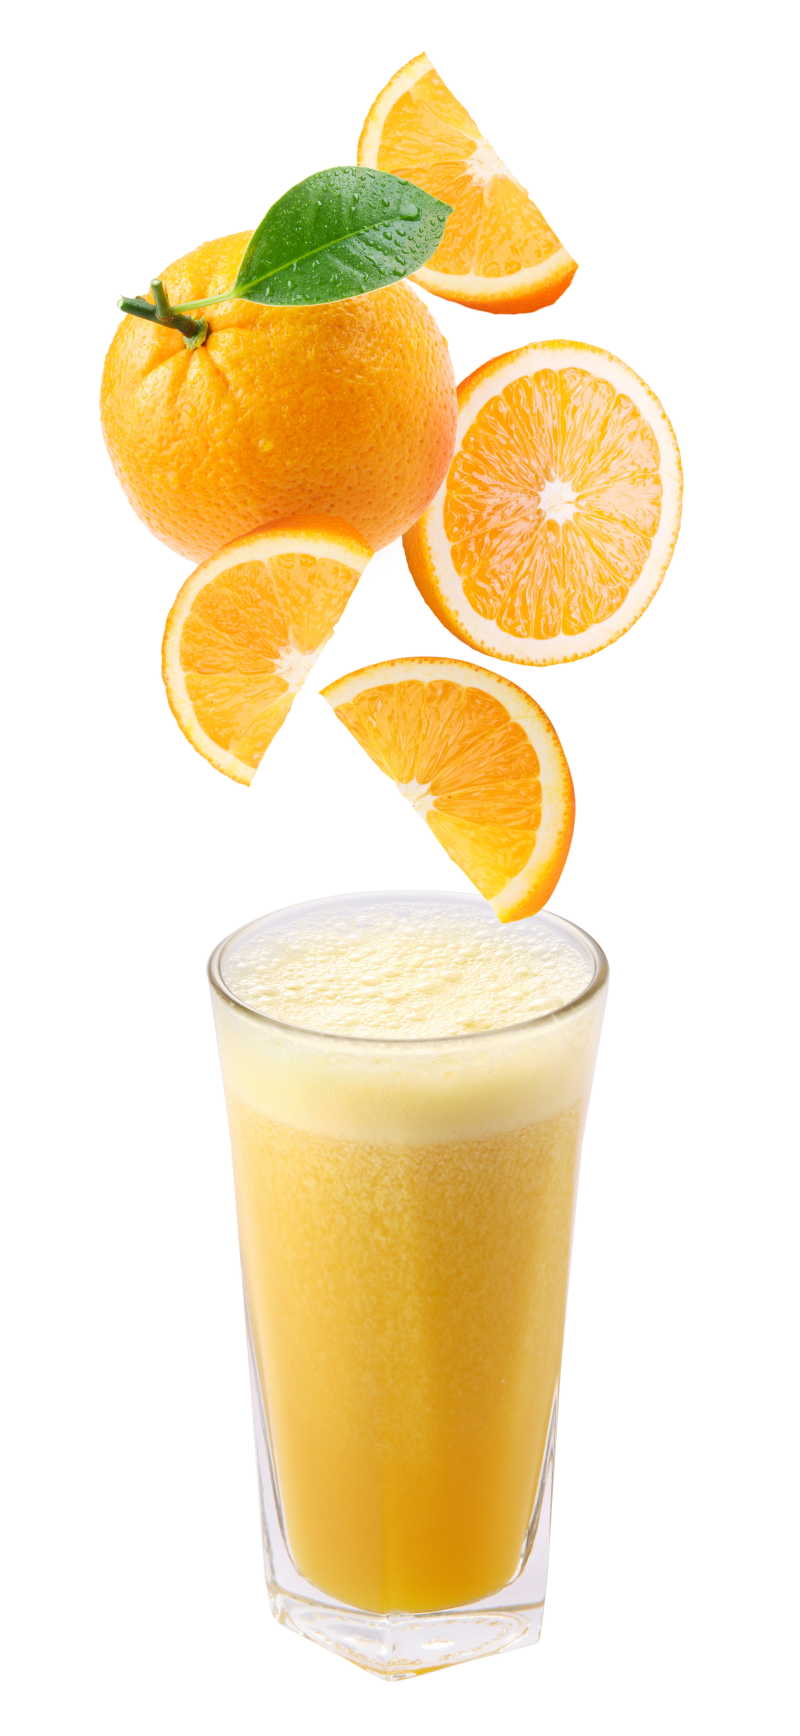 掉到新鲜果汁中的橘子片